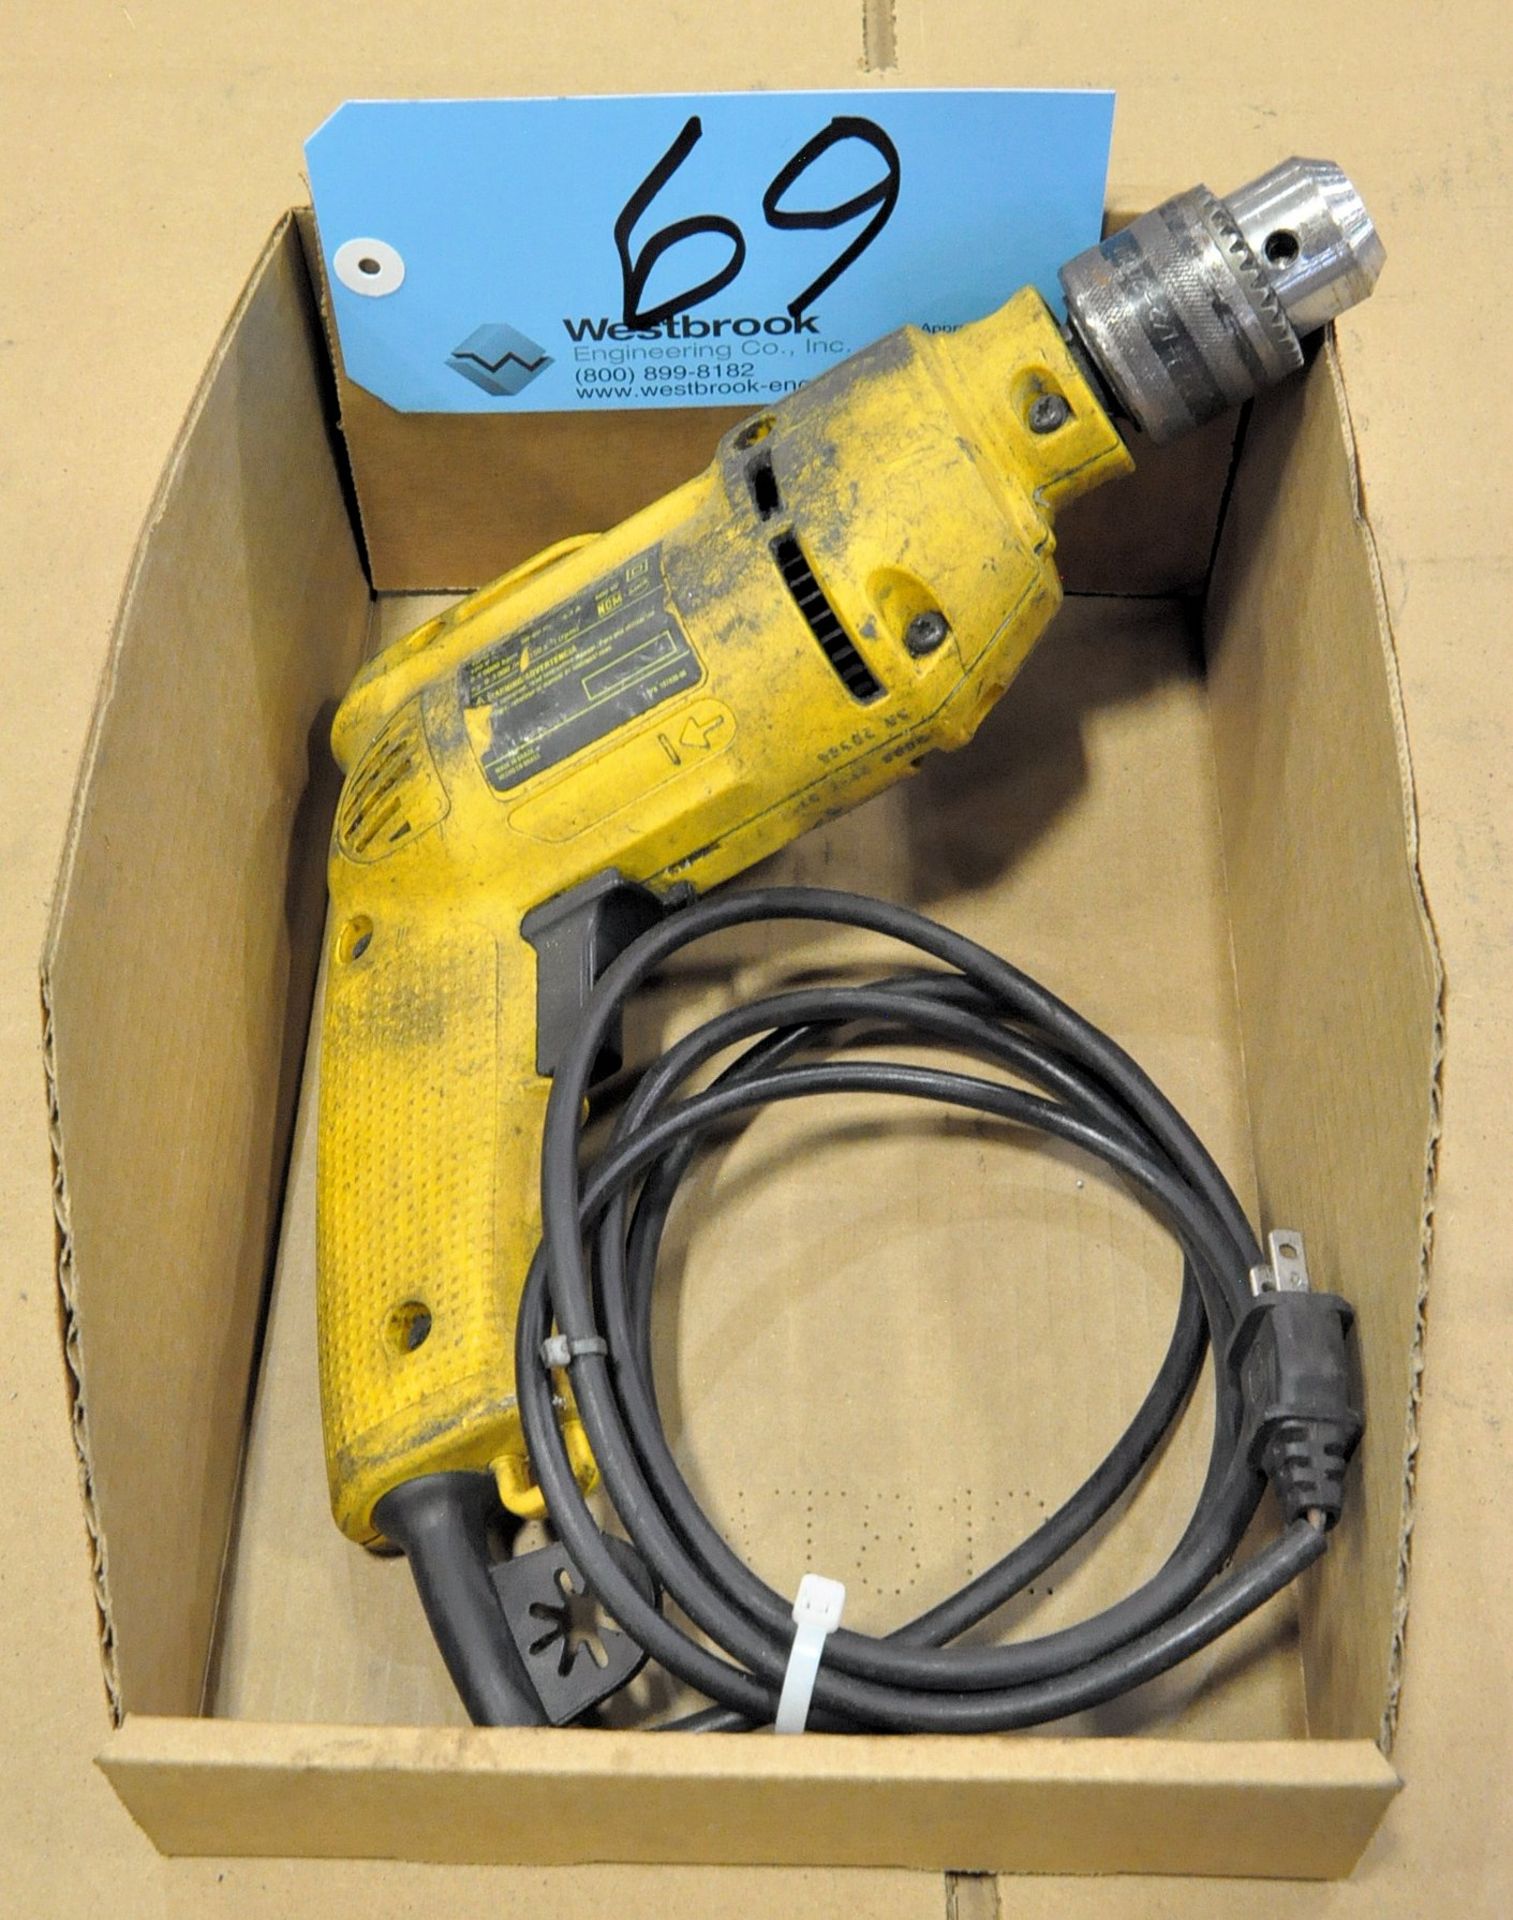 DeWalt DW502-B3, 1/2' Electric Drill in (1) Box